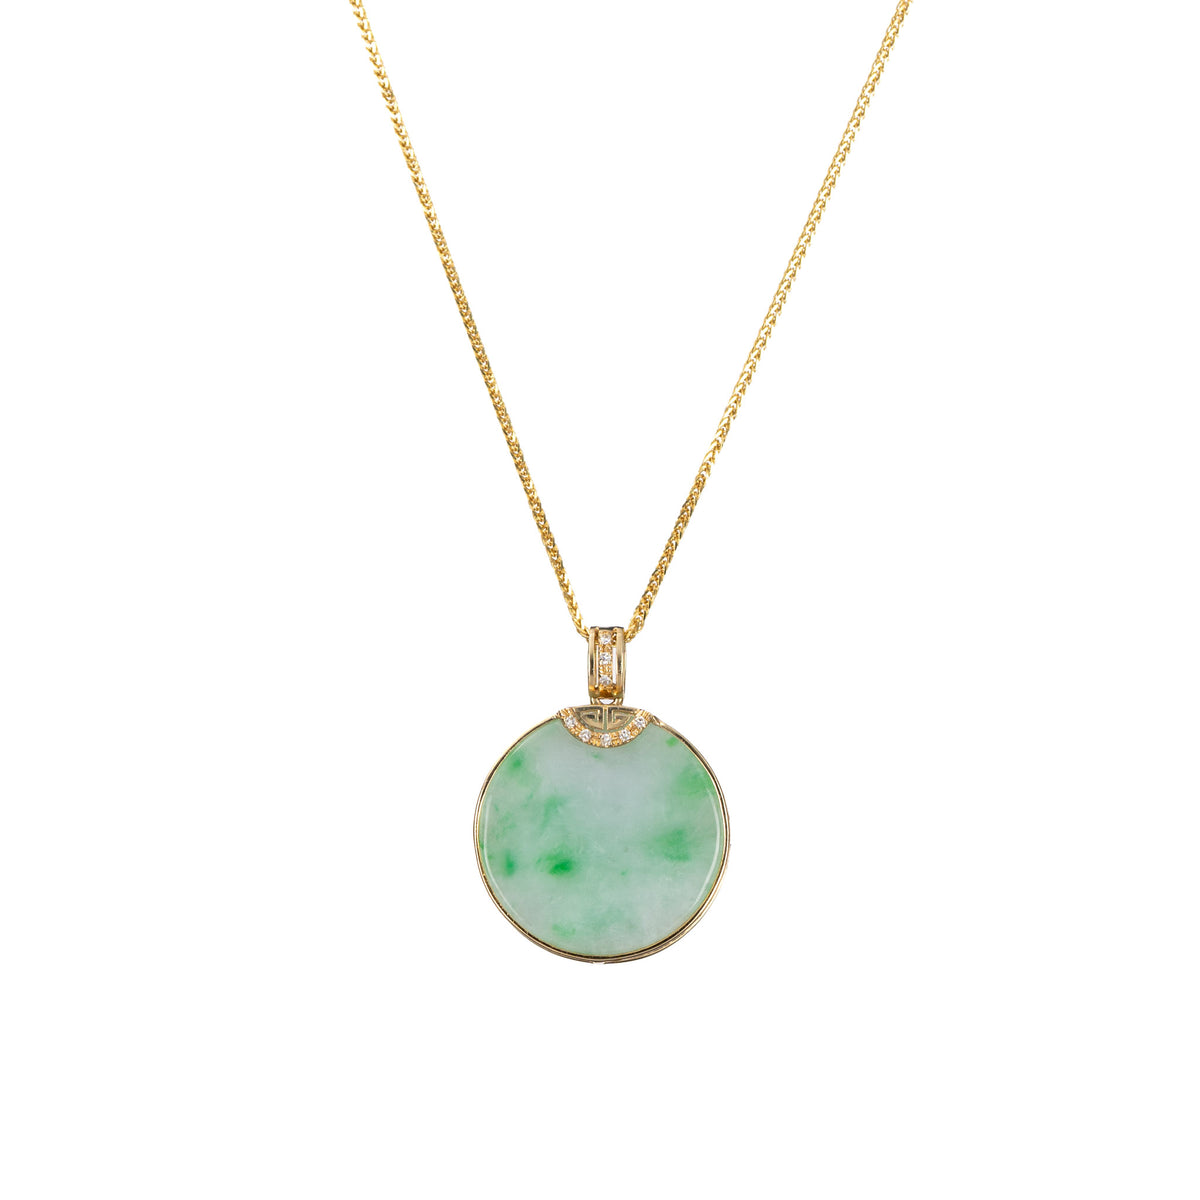 Circular Jade Pendant with Diamonds - Floral Frame